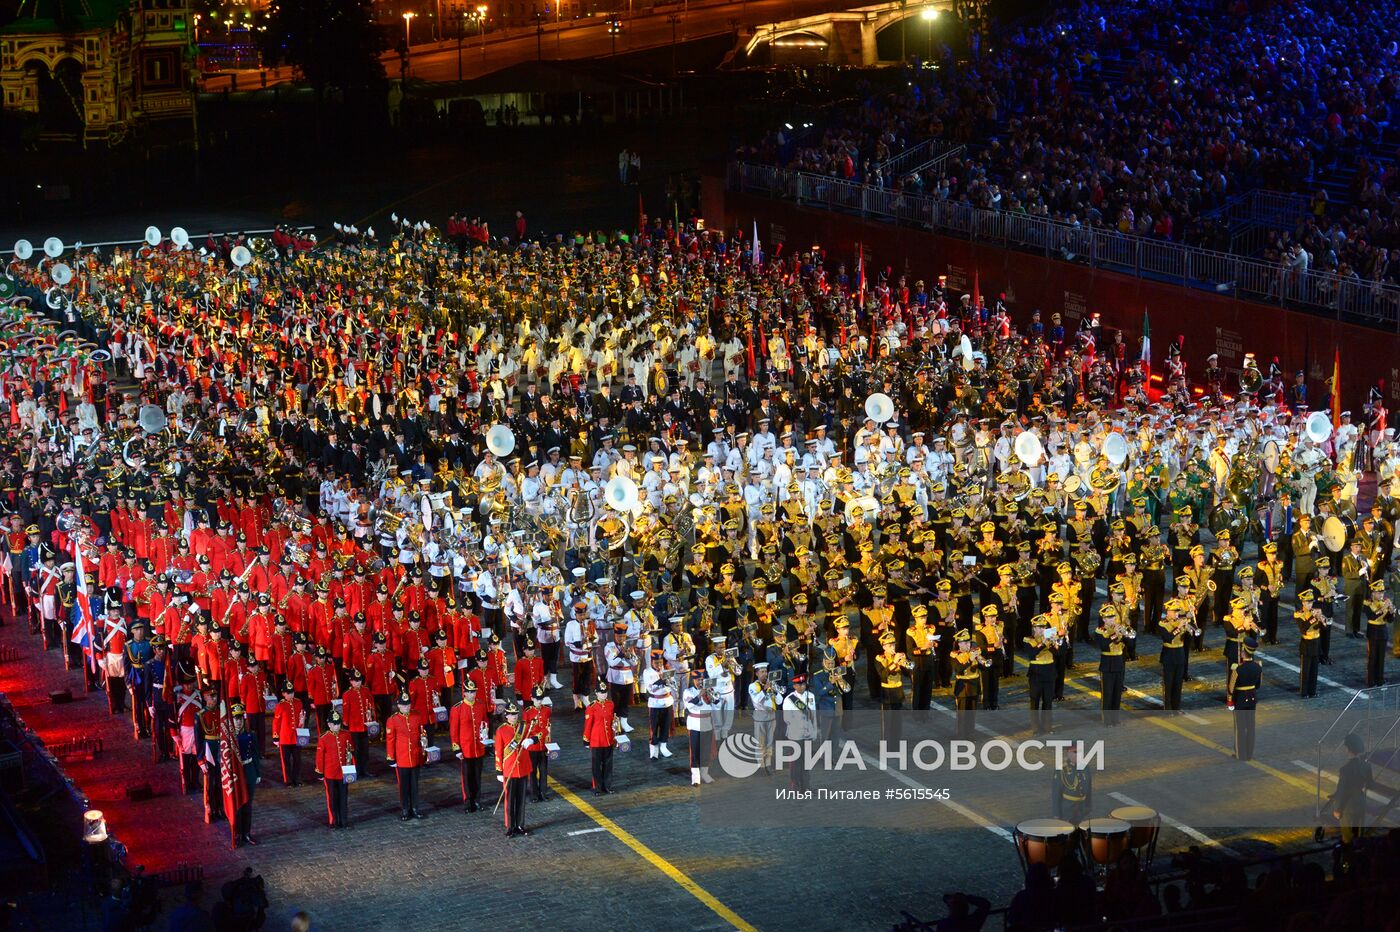 Генеральная репетиция церемонии открытия фестиваля "Спасская башня" 